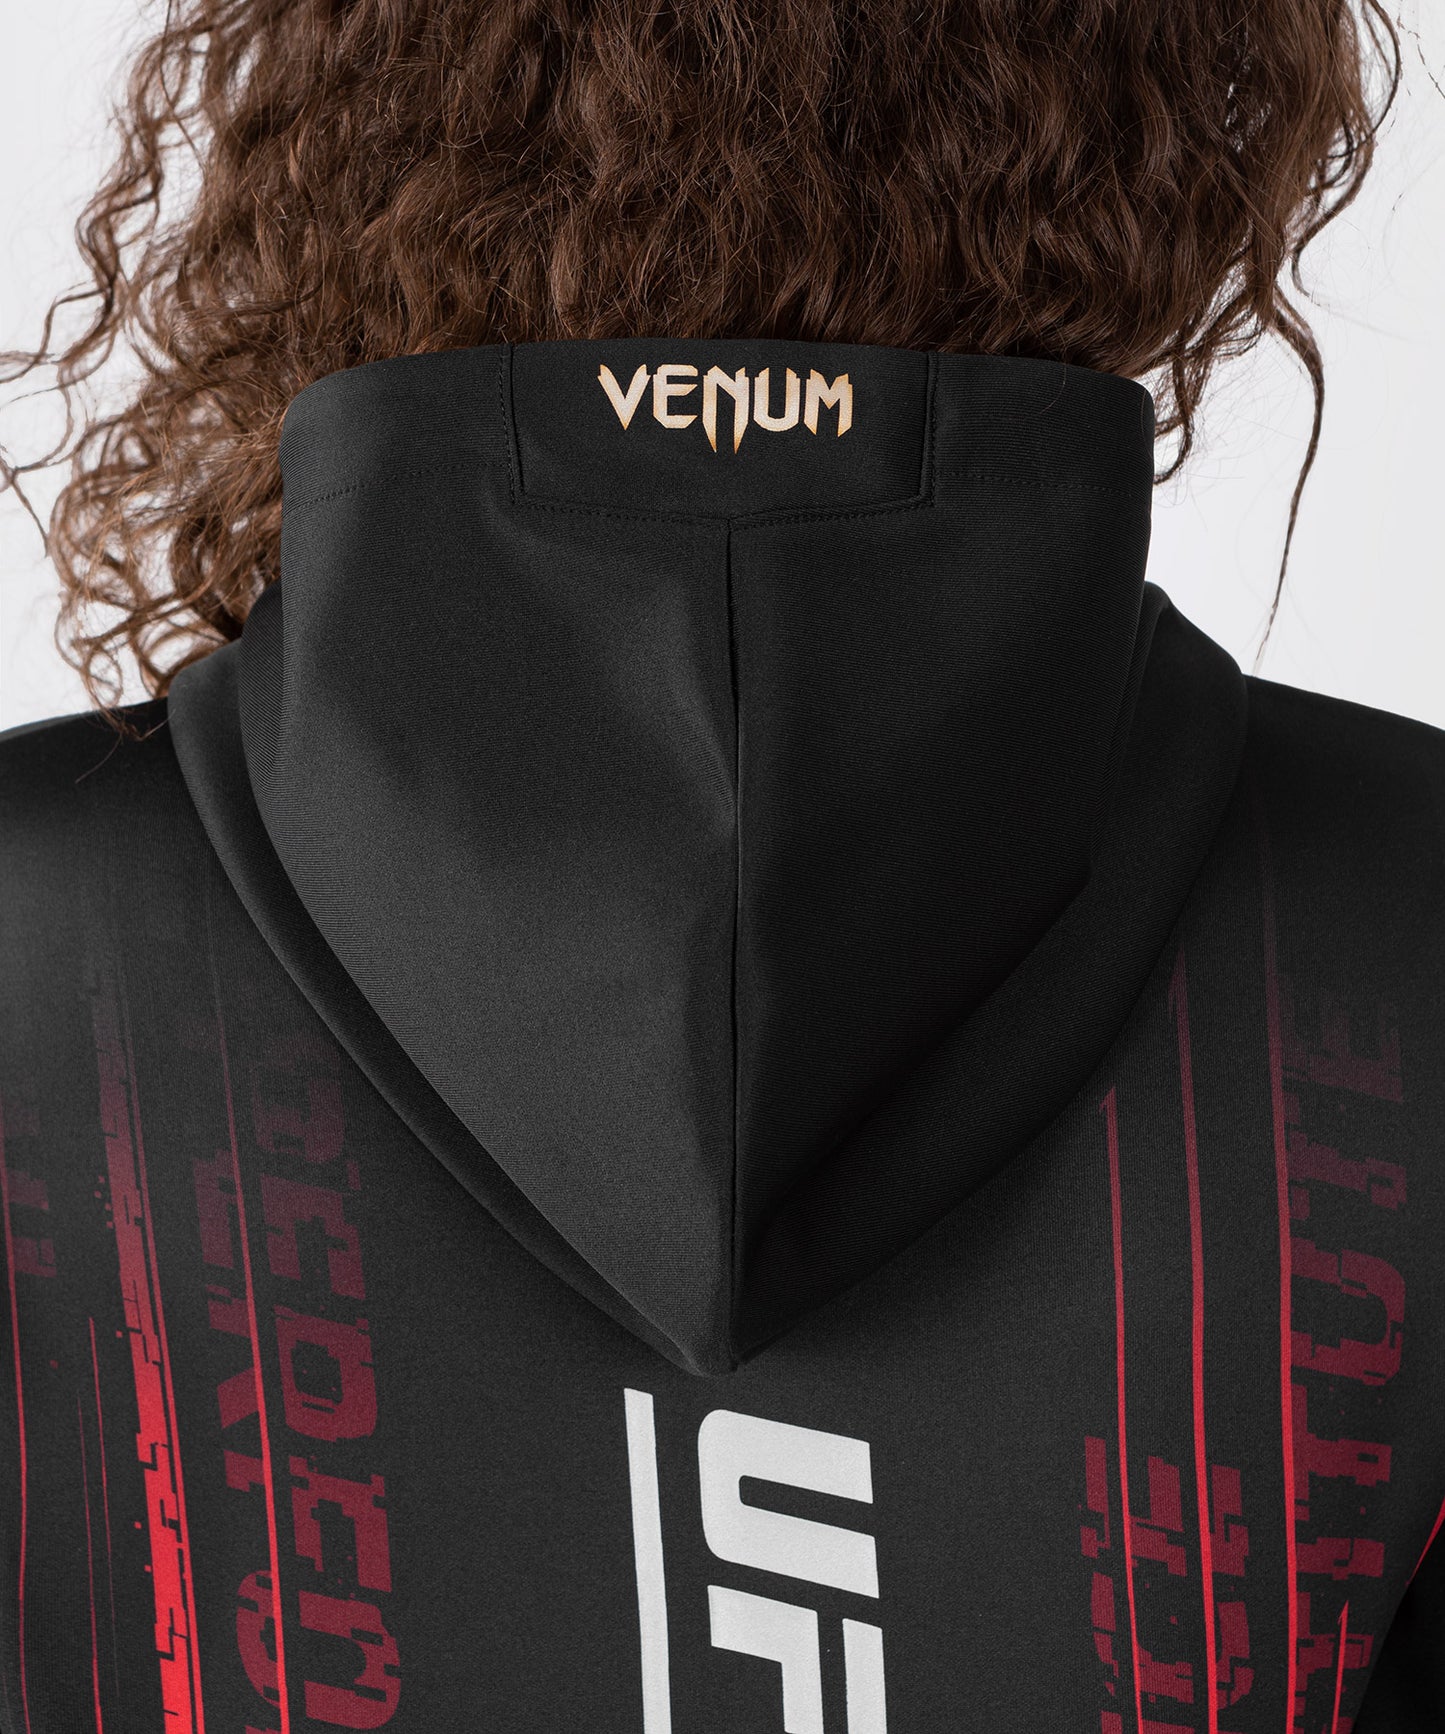 UFC Venum Performance Institute 2.0 Sudadera con Capucha para Mujer - Negro/Rojo